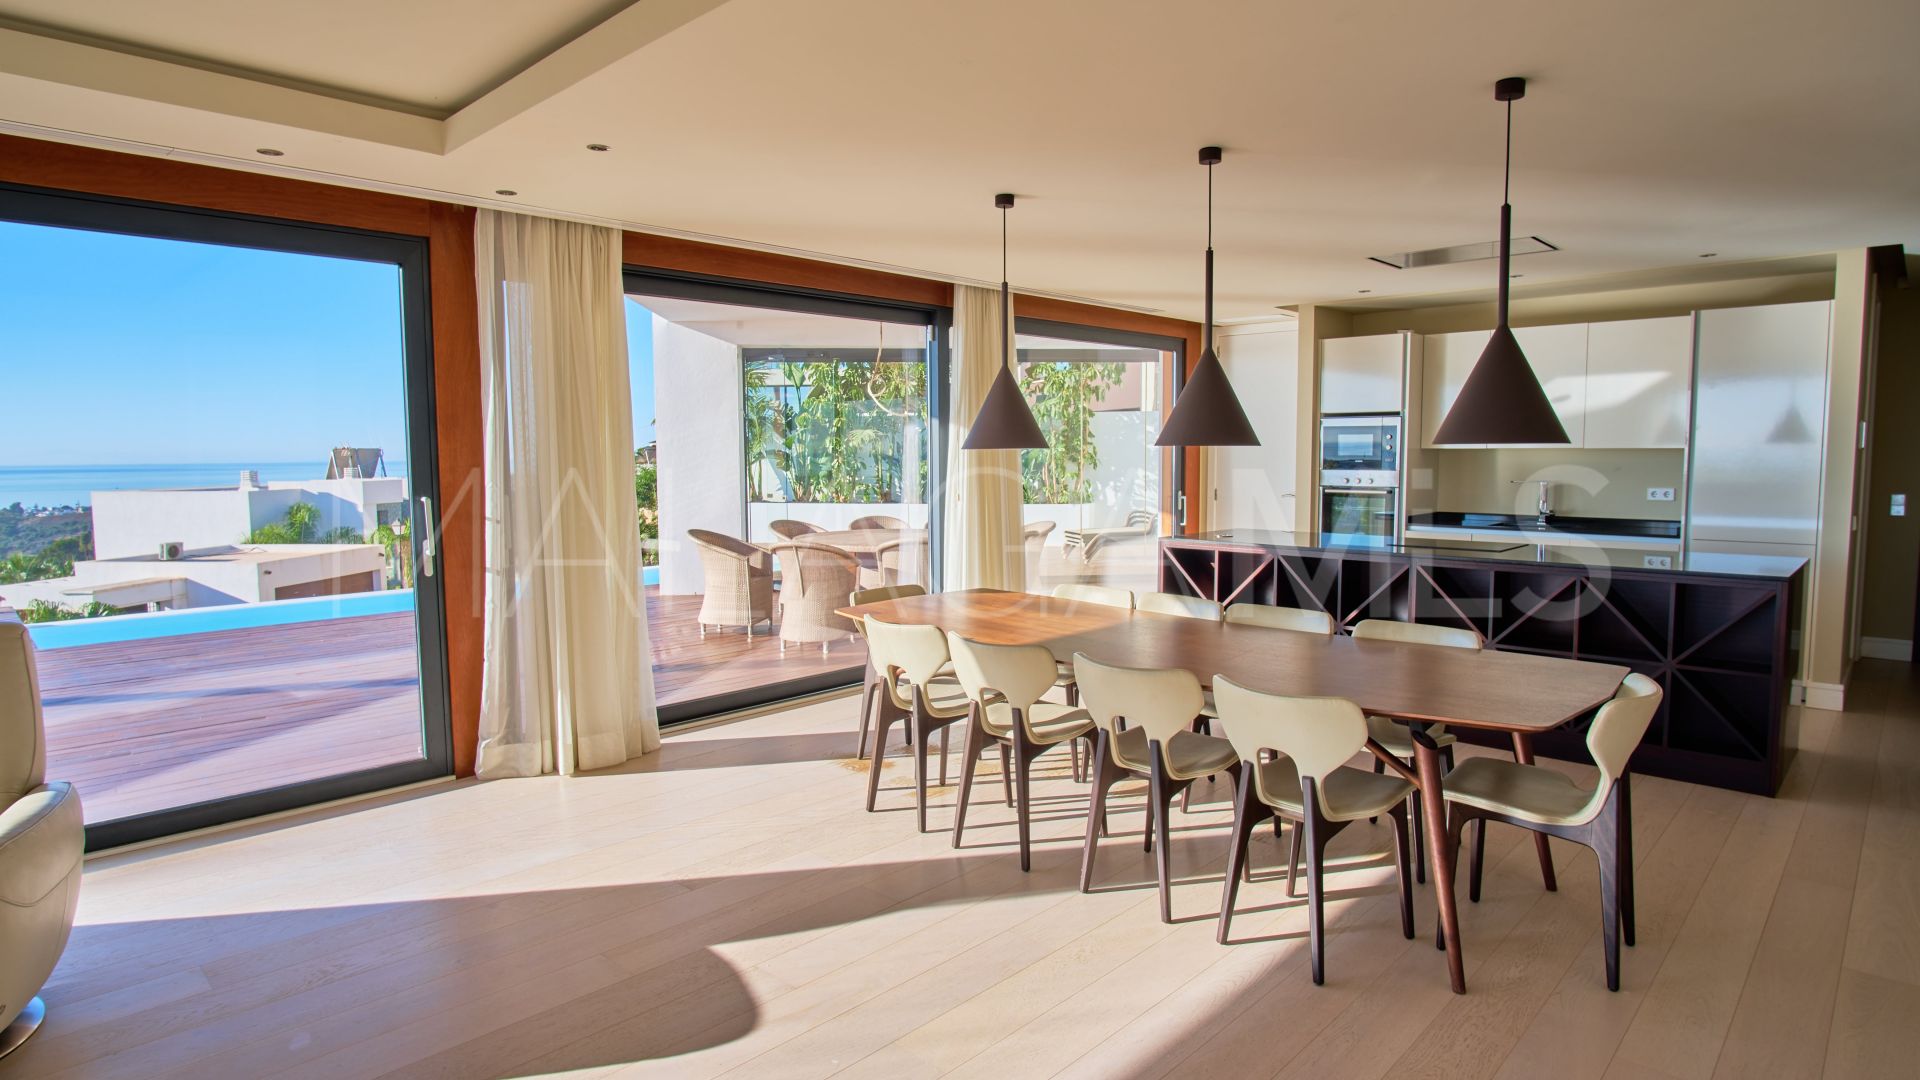 Villa for sale in Mirador del Paraiso with 6 bedrooms